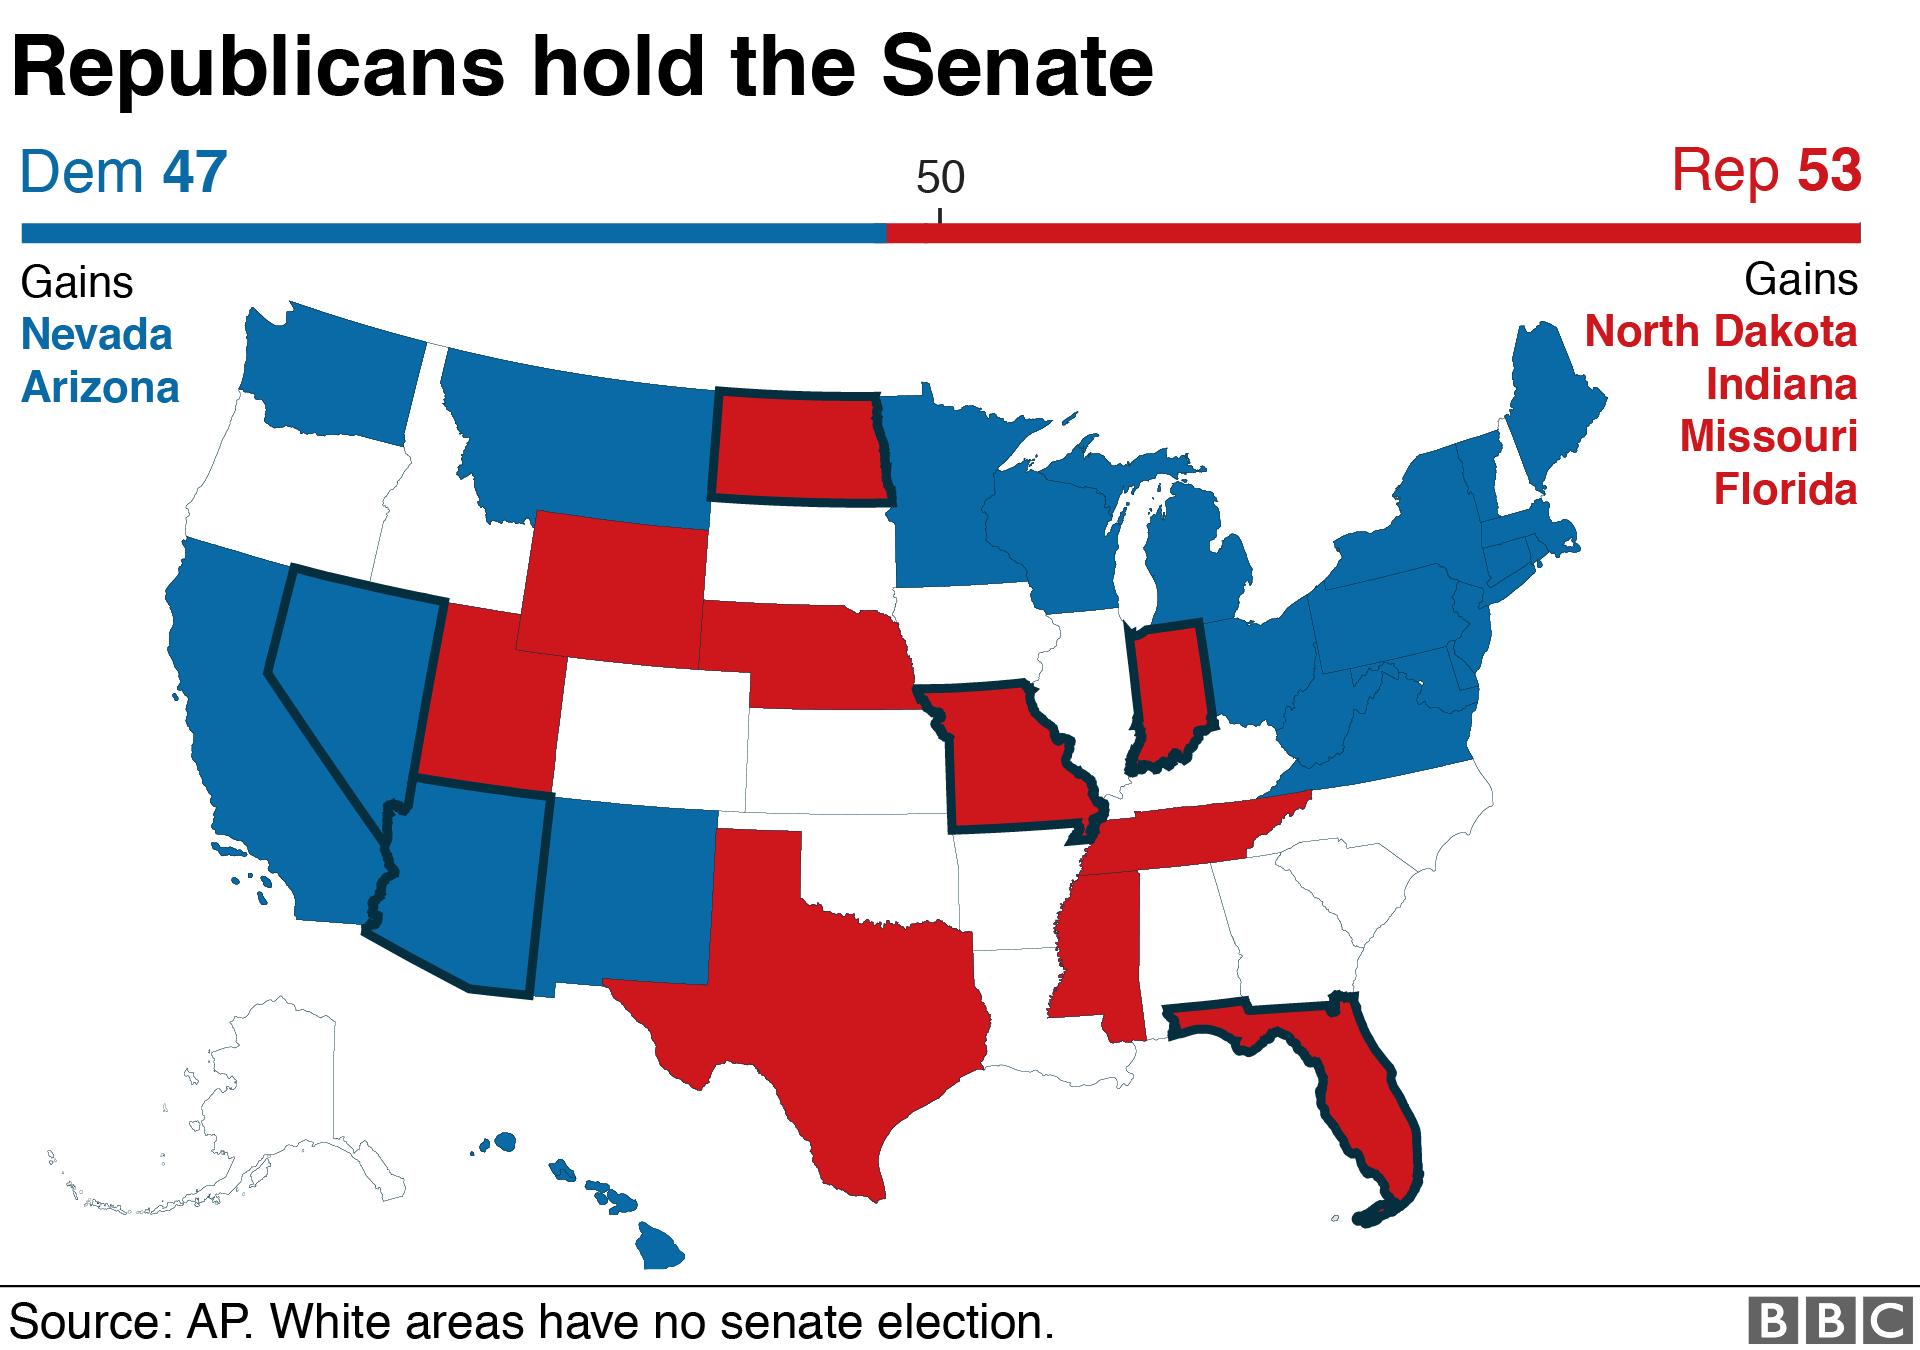 Карта, показывающая, что республиканцы держали Сенат США после промежуточных выборов, поскольку они захватили Флориду, Индиану, Миссури и Северную Дакоту, в то время как демократы получили Неваду и Аризону